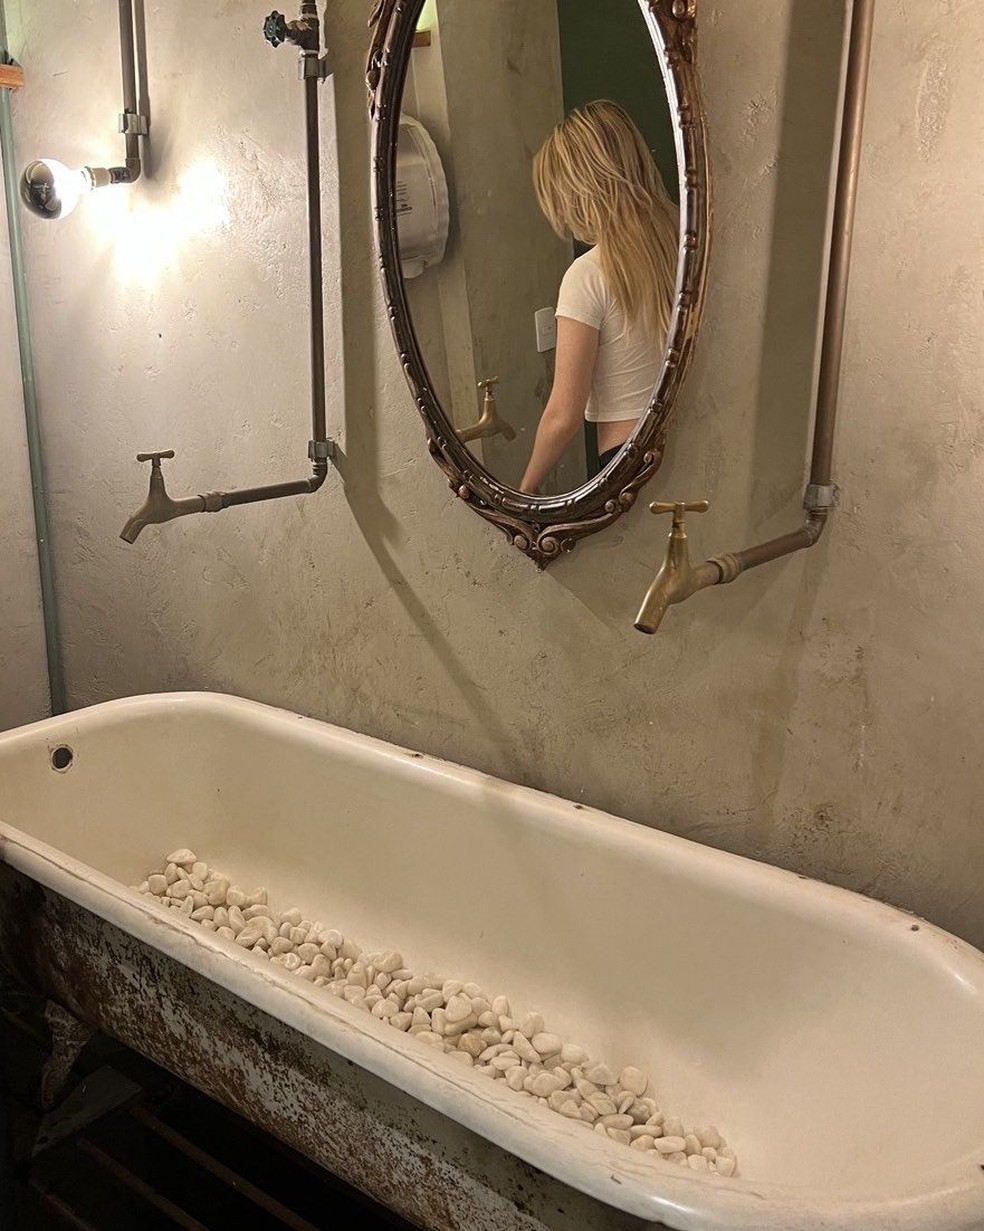 Luisa Sonza aparece em reflexo de espelho em banheiro; foto foi publicada pela mãe — Foto: Reprodução/Instagram